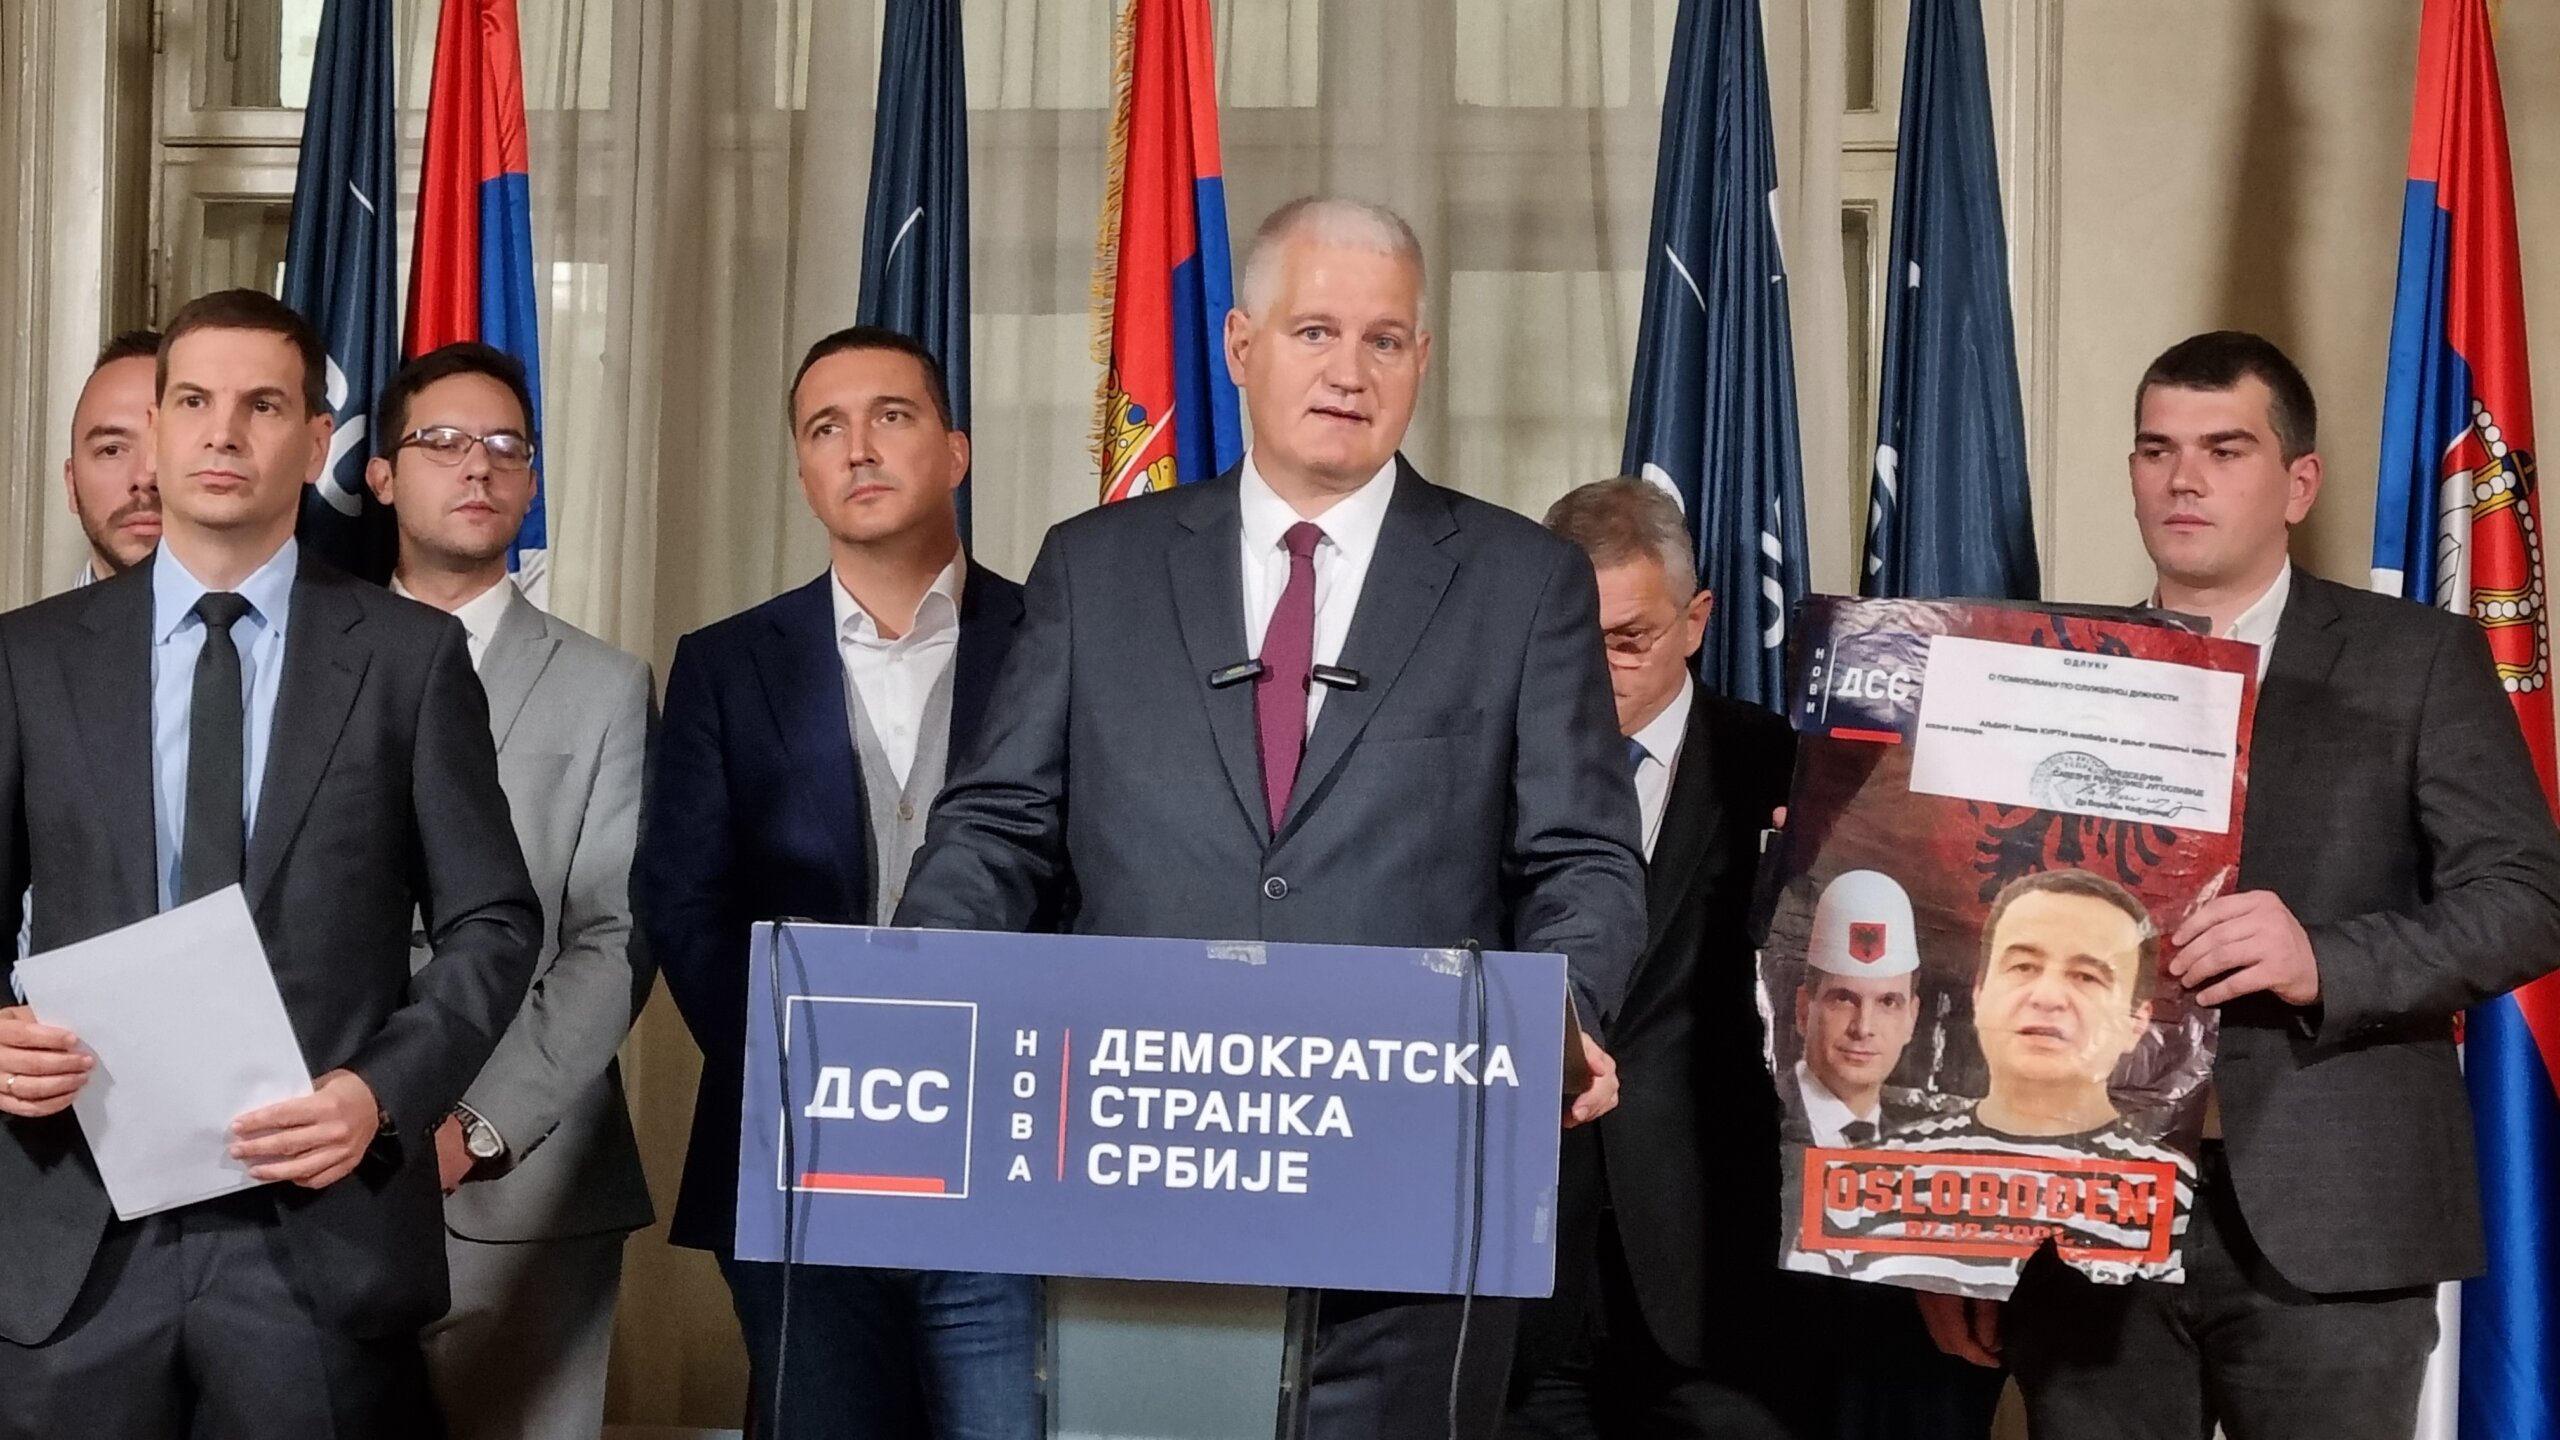 "Veštački se pravi dilema da li se opozicija drži principa": Srbija protiv nasilja na korak od odluke da prihvati poslaničke mandate, NADA odlučila 8